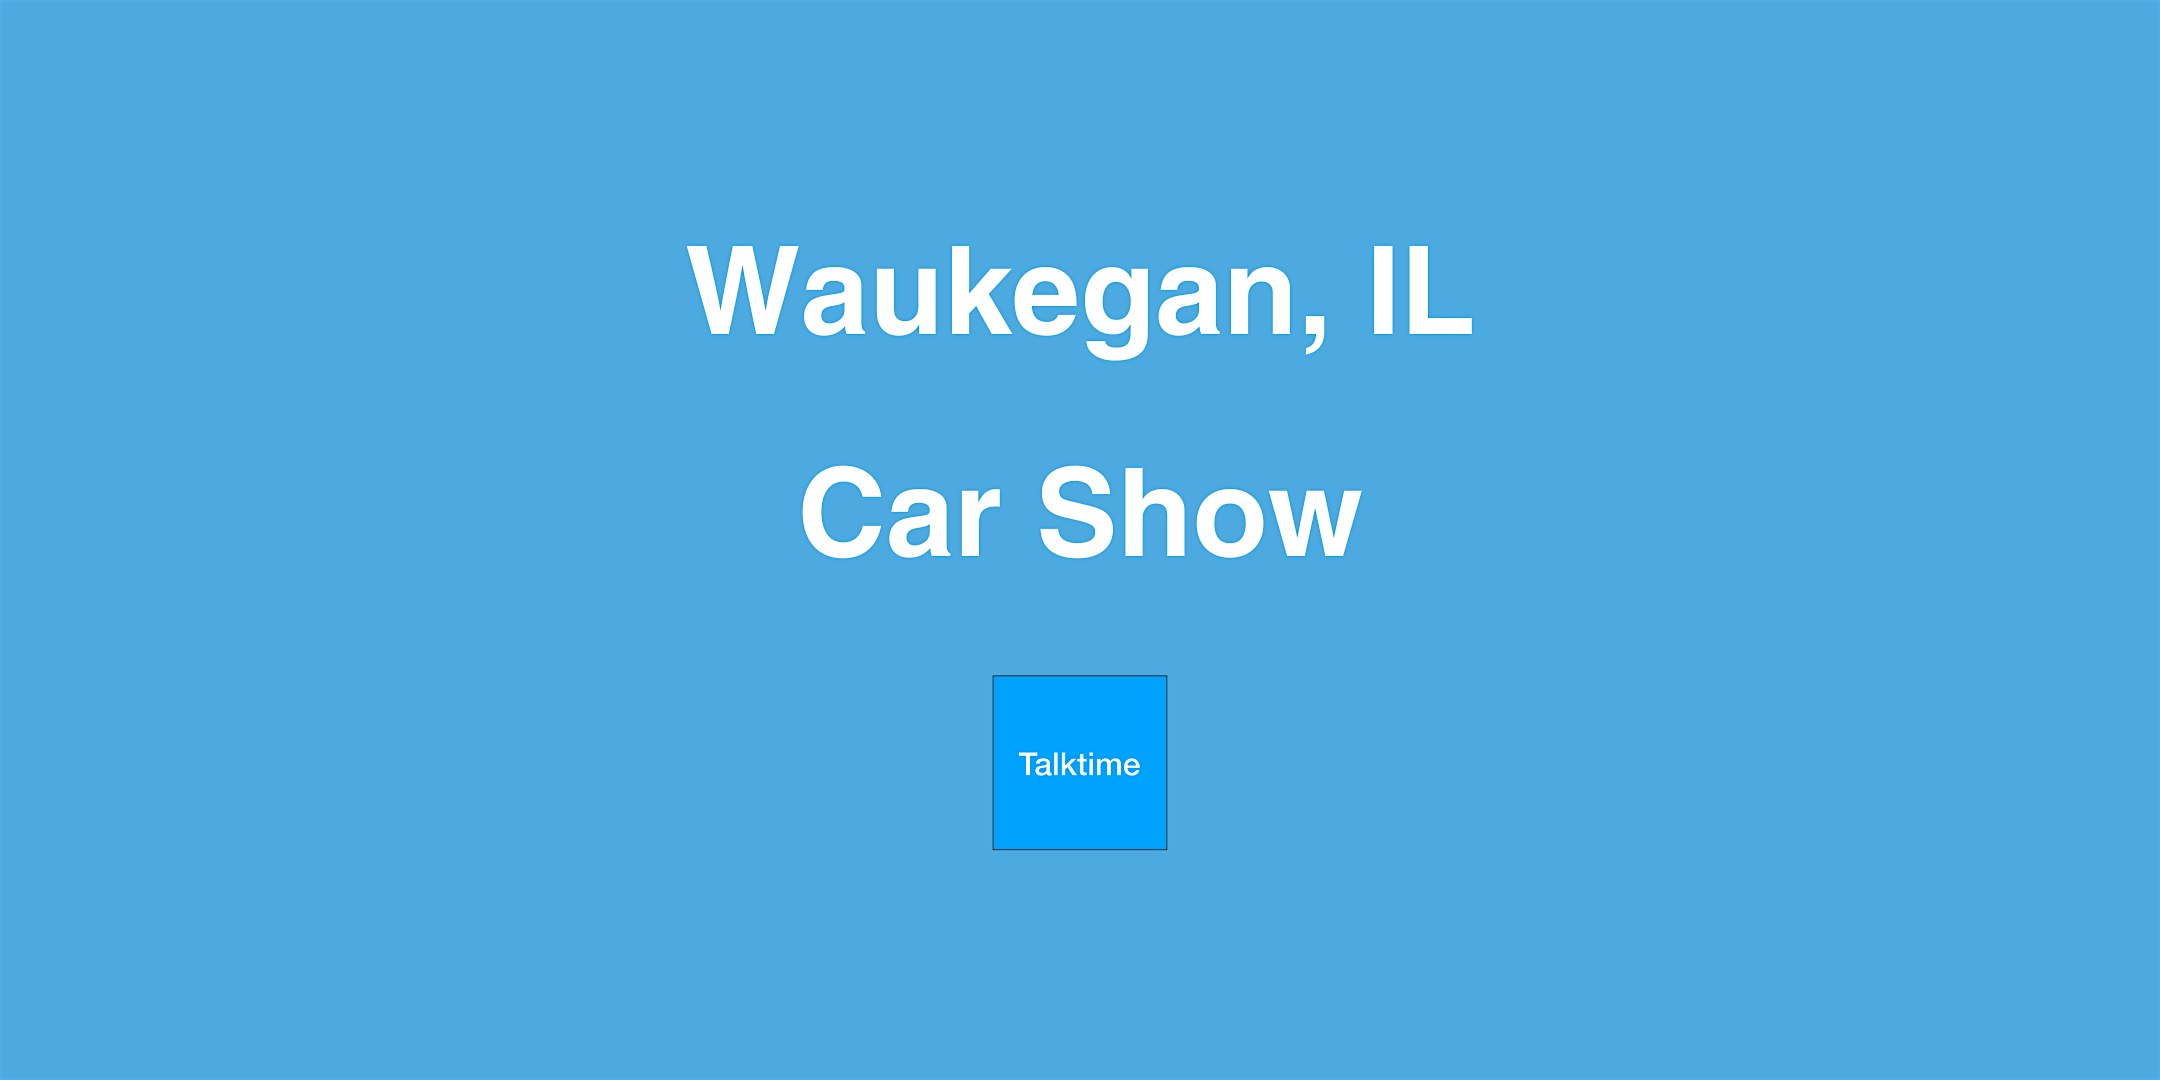 Car Show - Waukegan